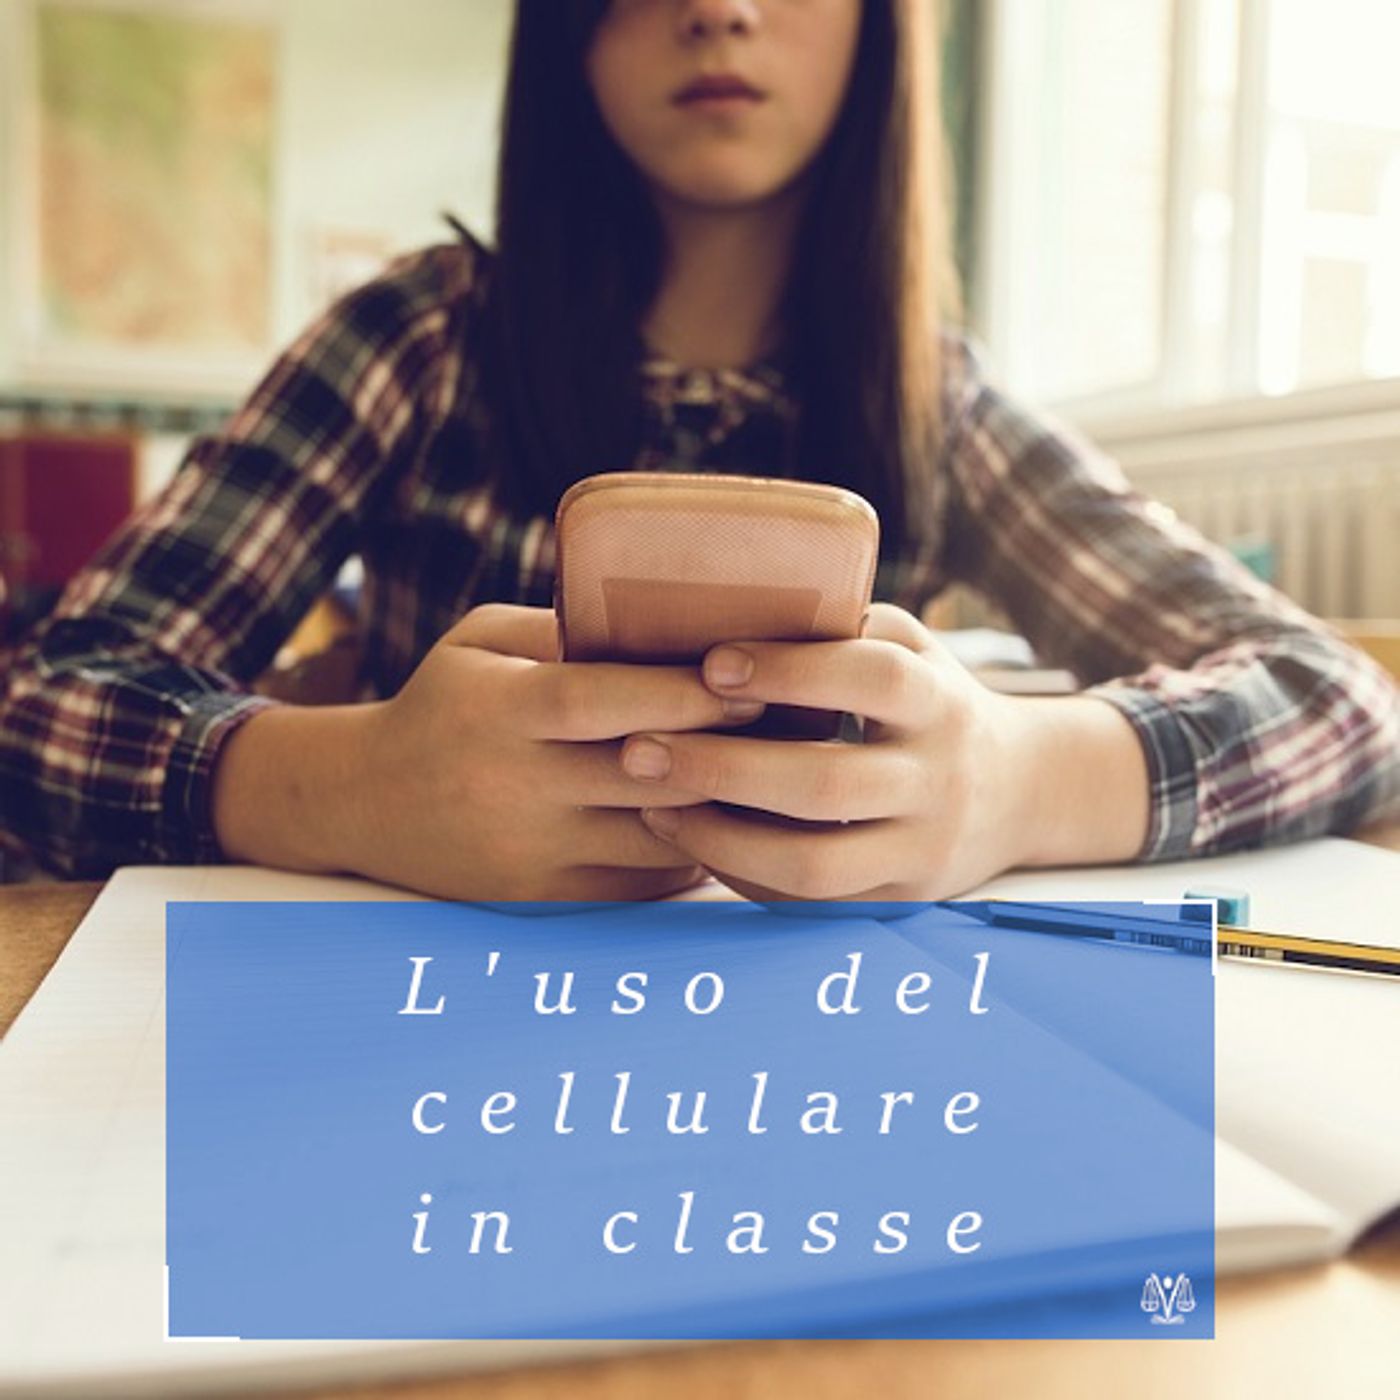 L'uso del cellulare in classe